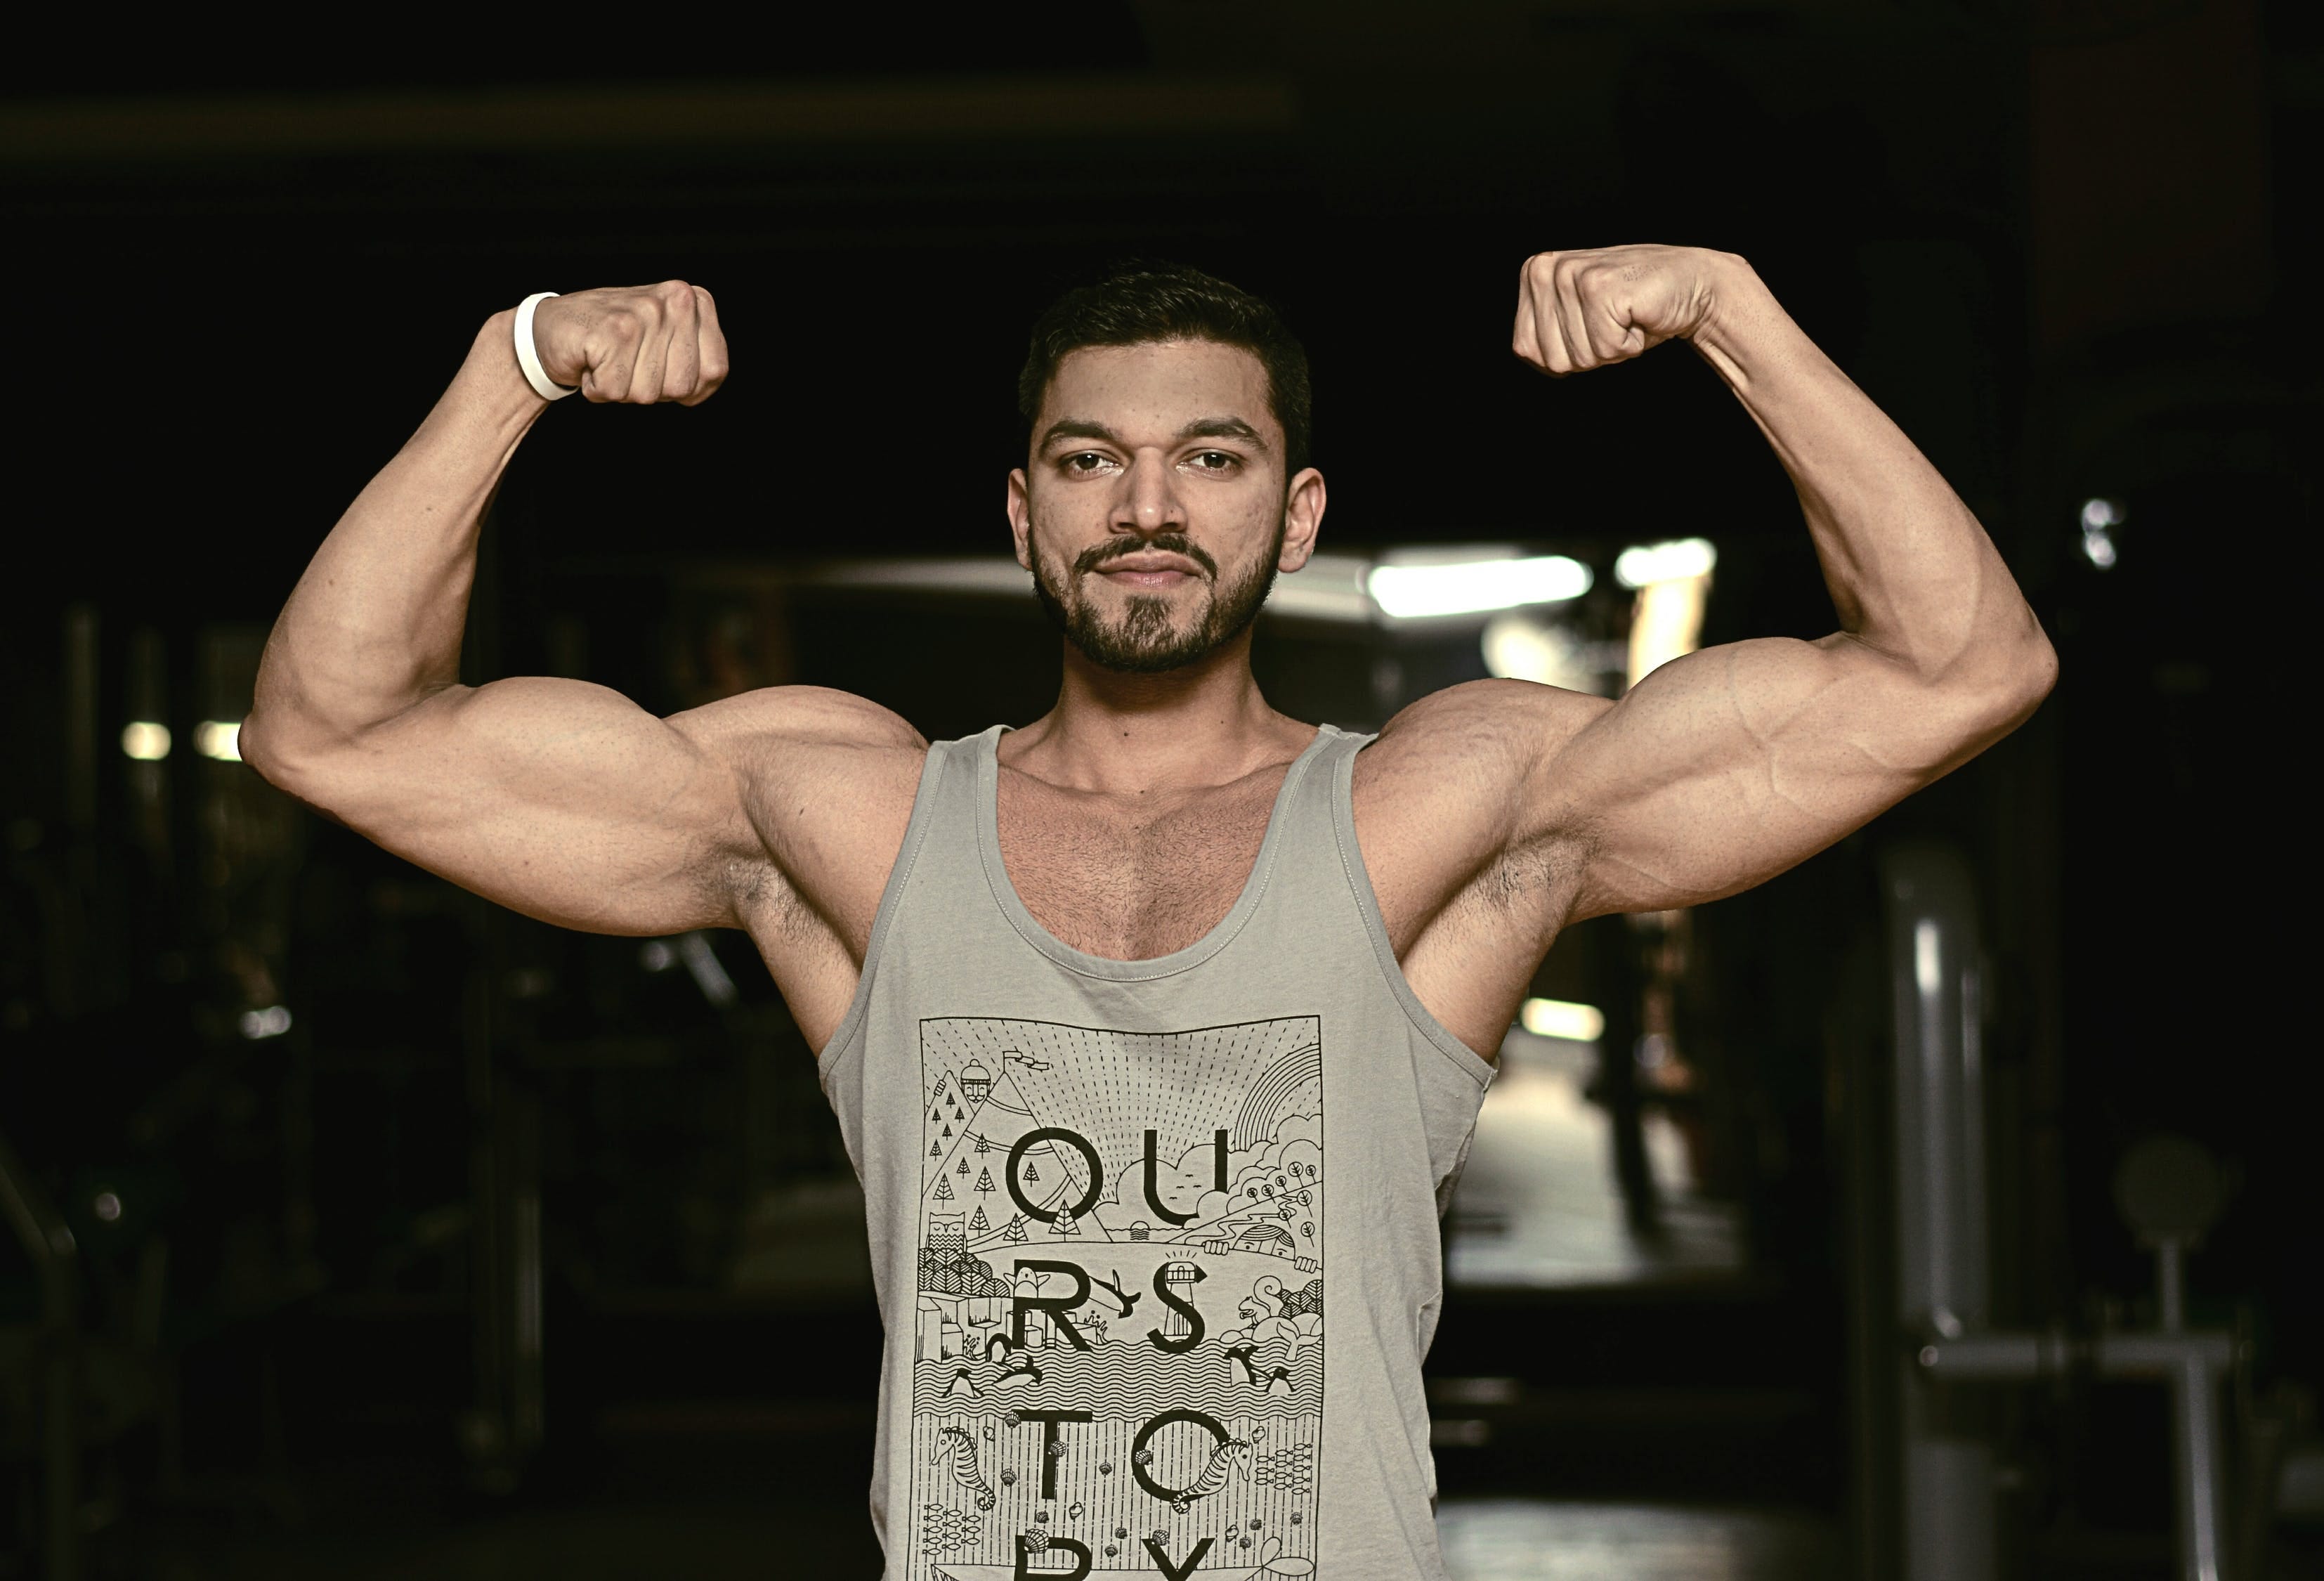 Treino para Ectomorfo: O que fazer para ganhar massa muscular rápido | by  André M. Moraes | Medium